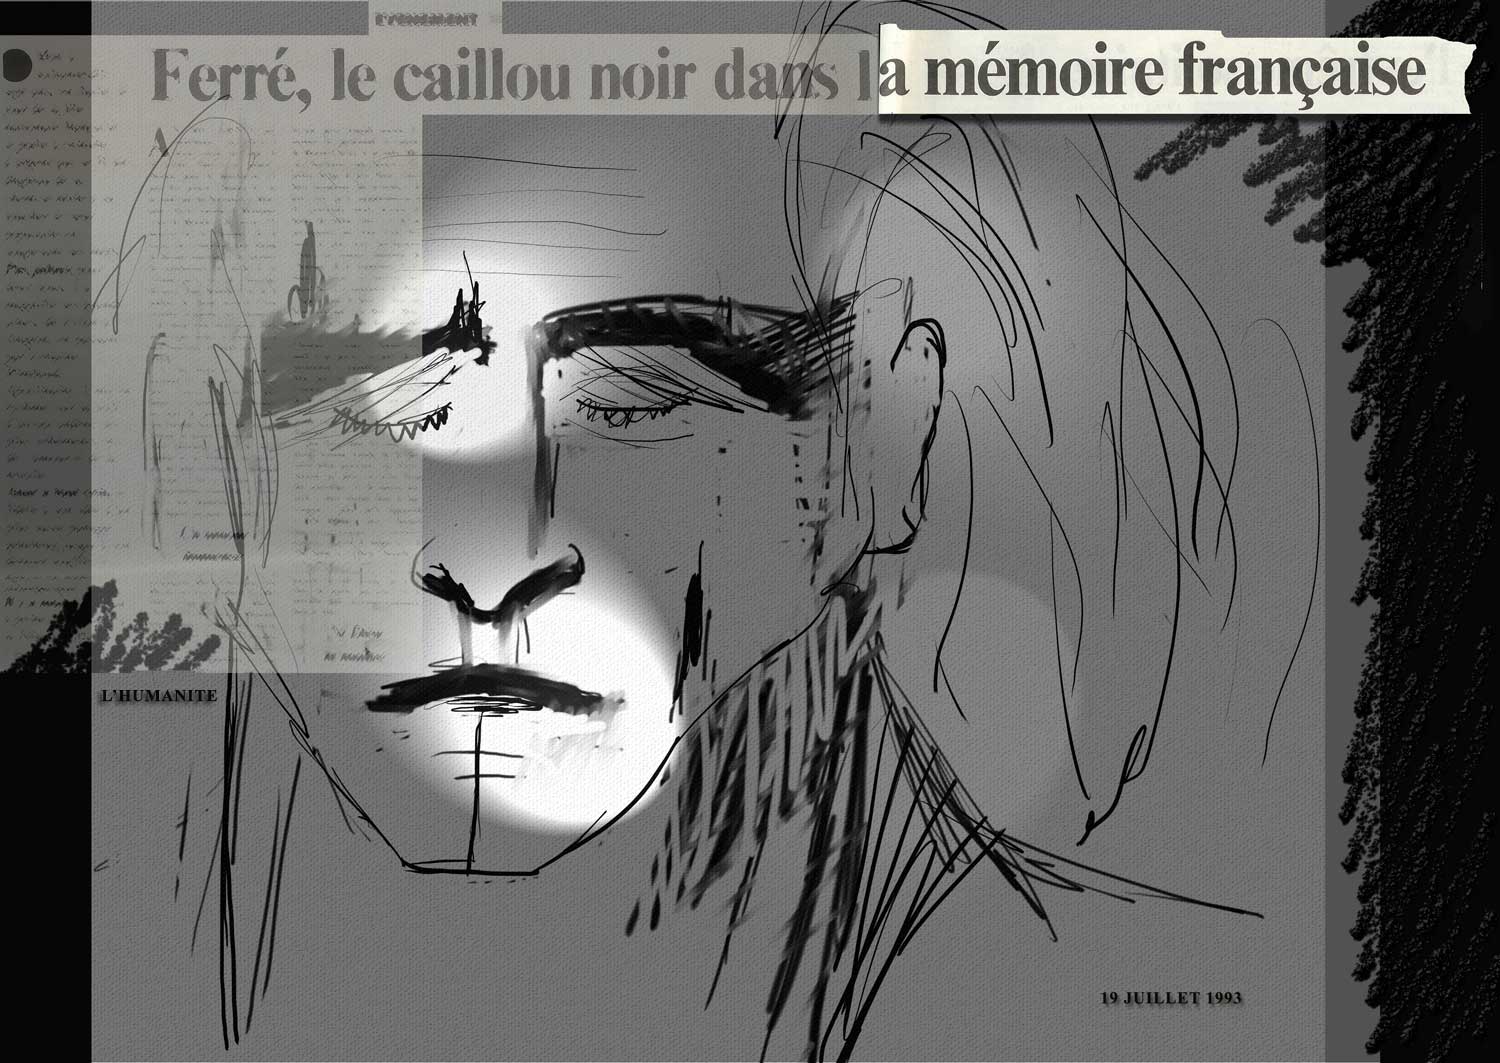 Léo Ferré - FERRE LE CAILLOU NOIR DANS LA MEMOIRE FRANCAISE